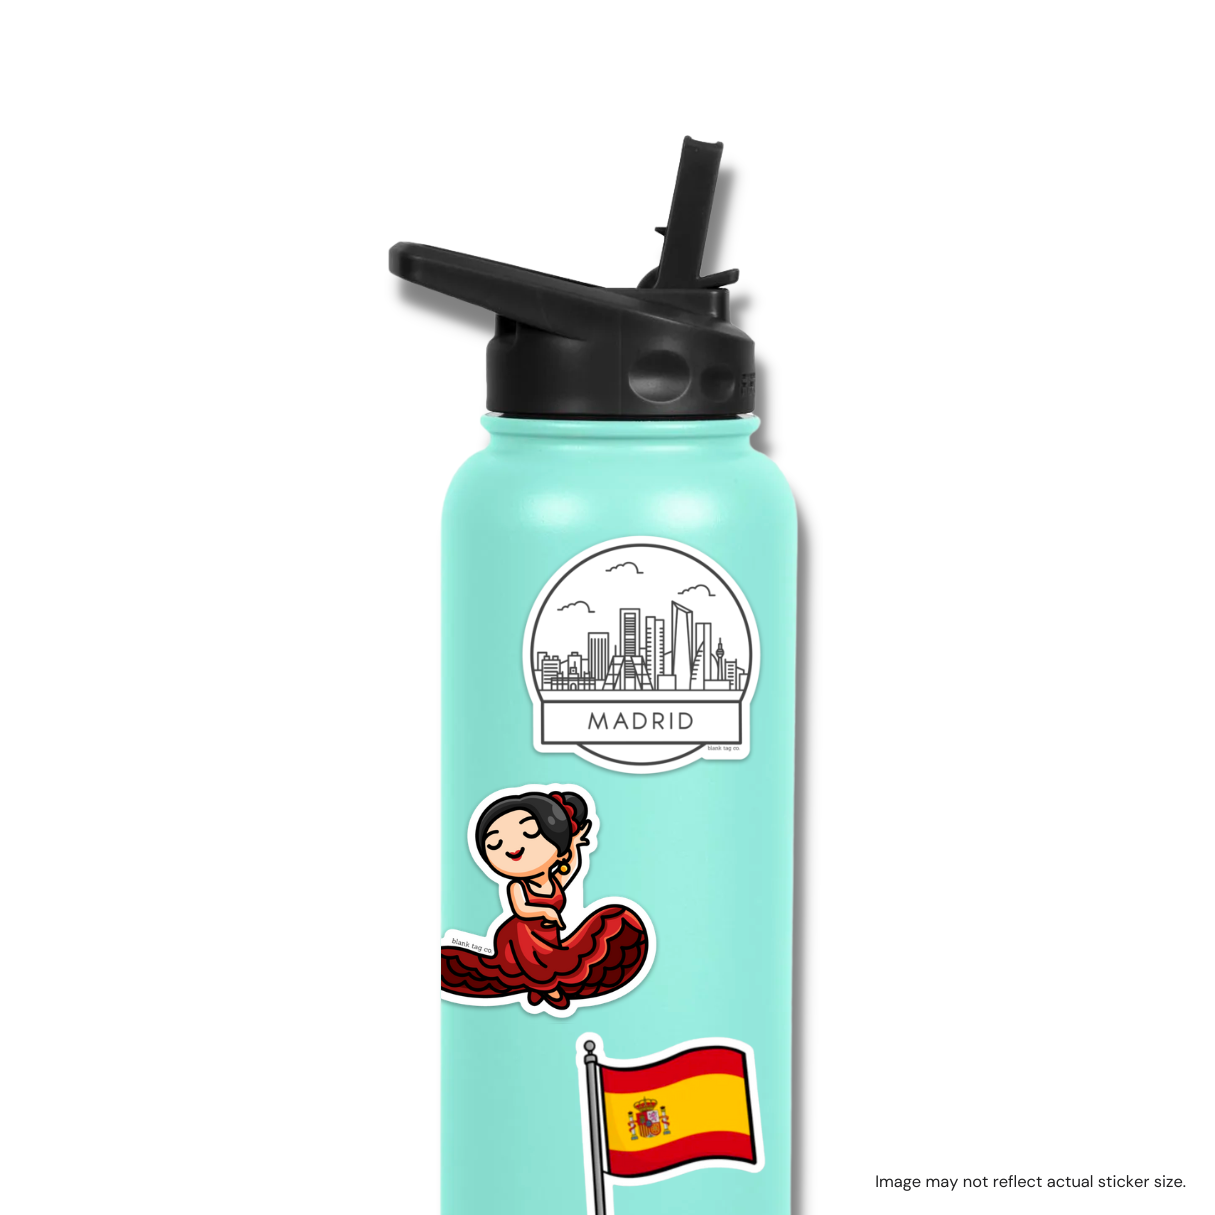 The Madrid Cityscape Sticker